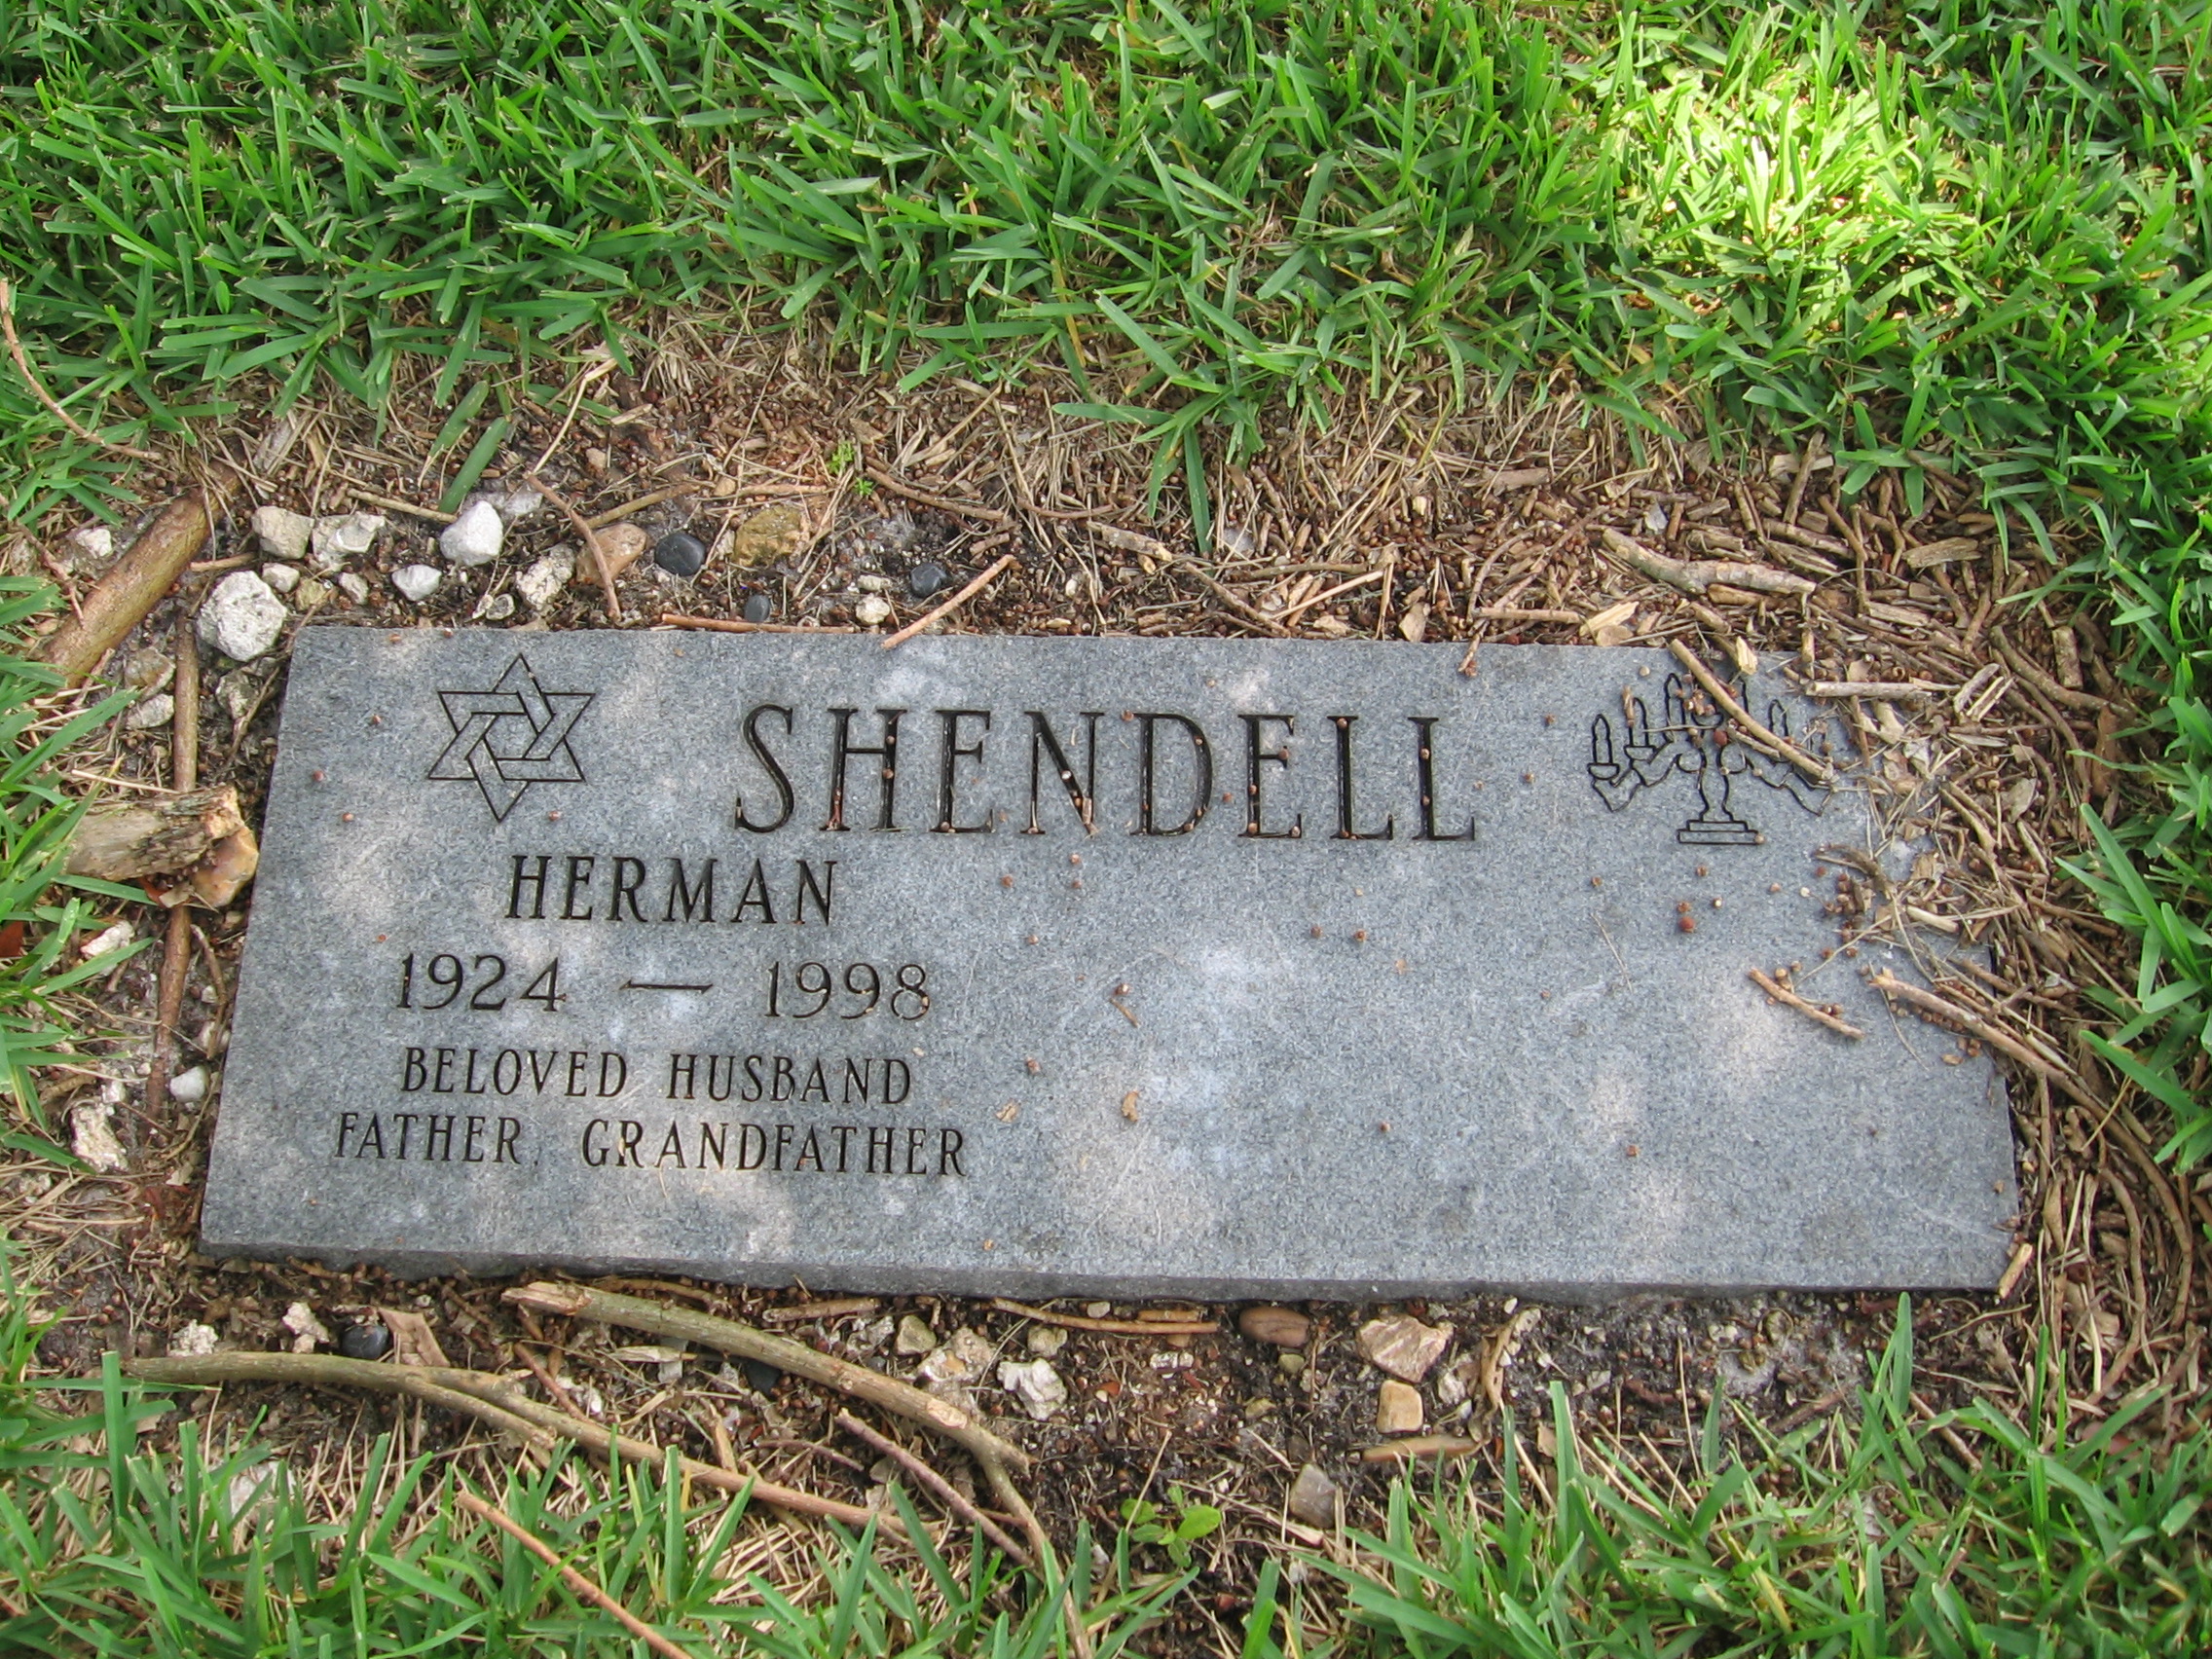 Herman Shendell